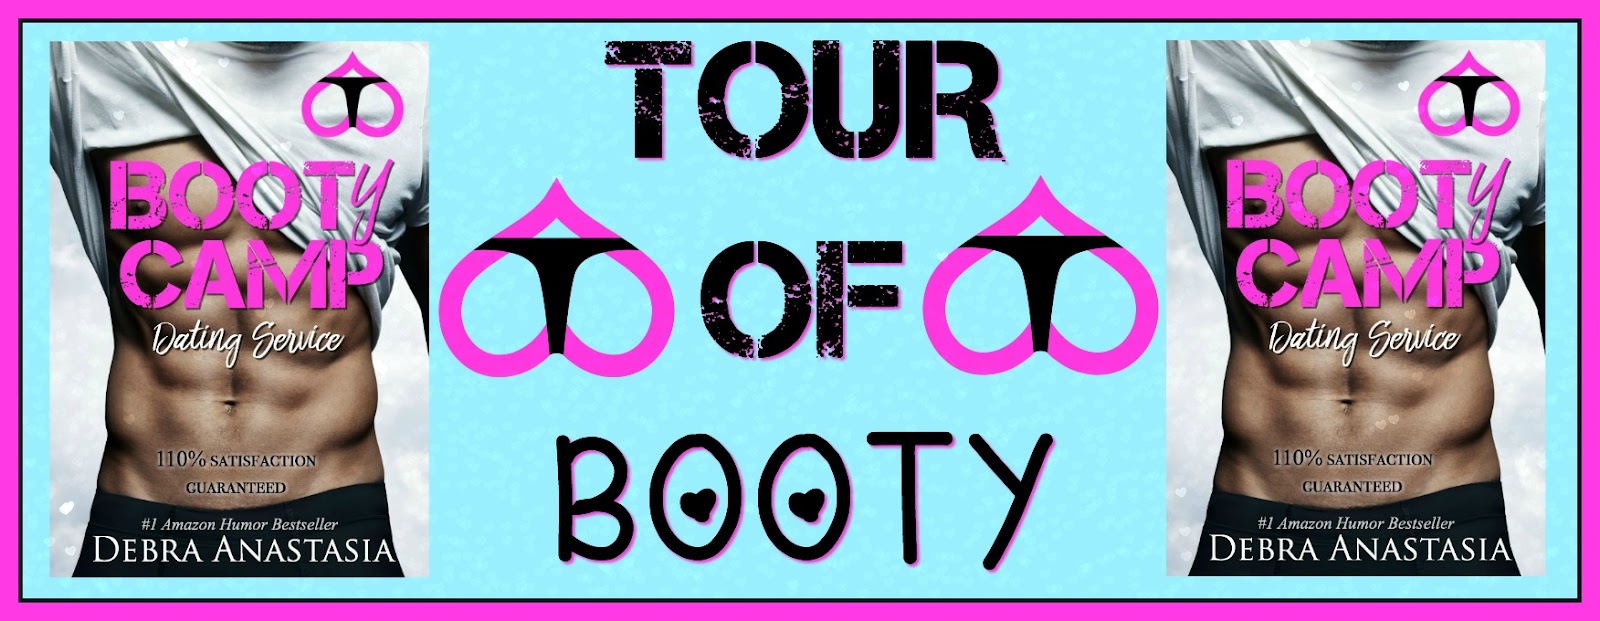 Tour of Booty banner.jpg